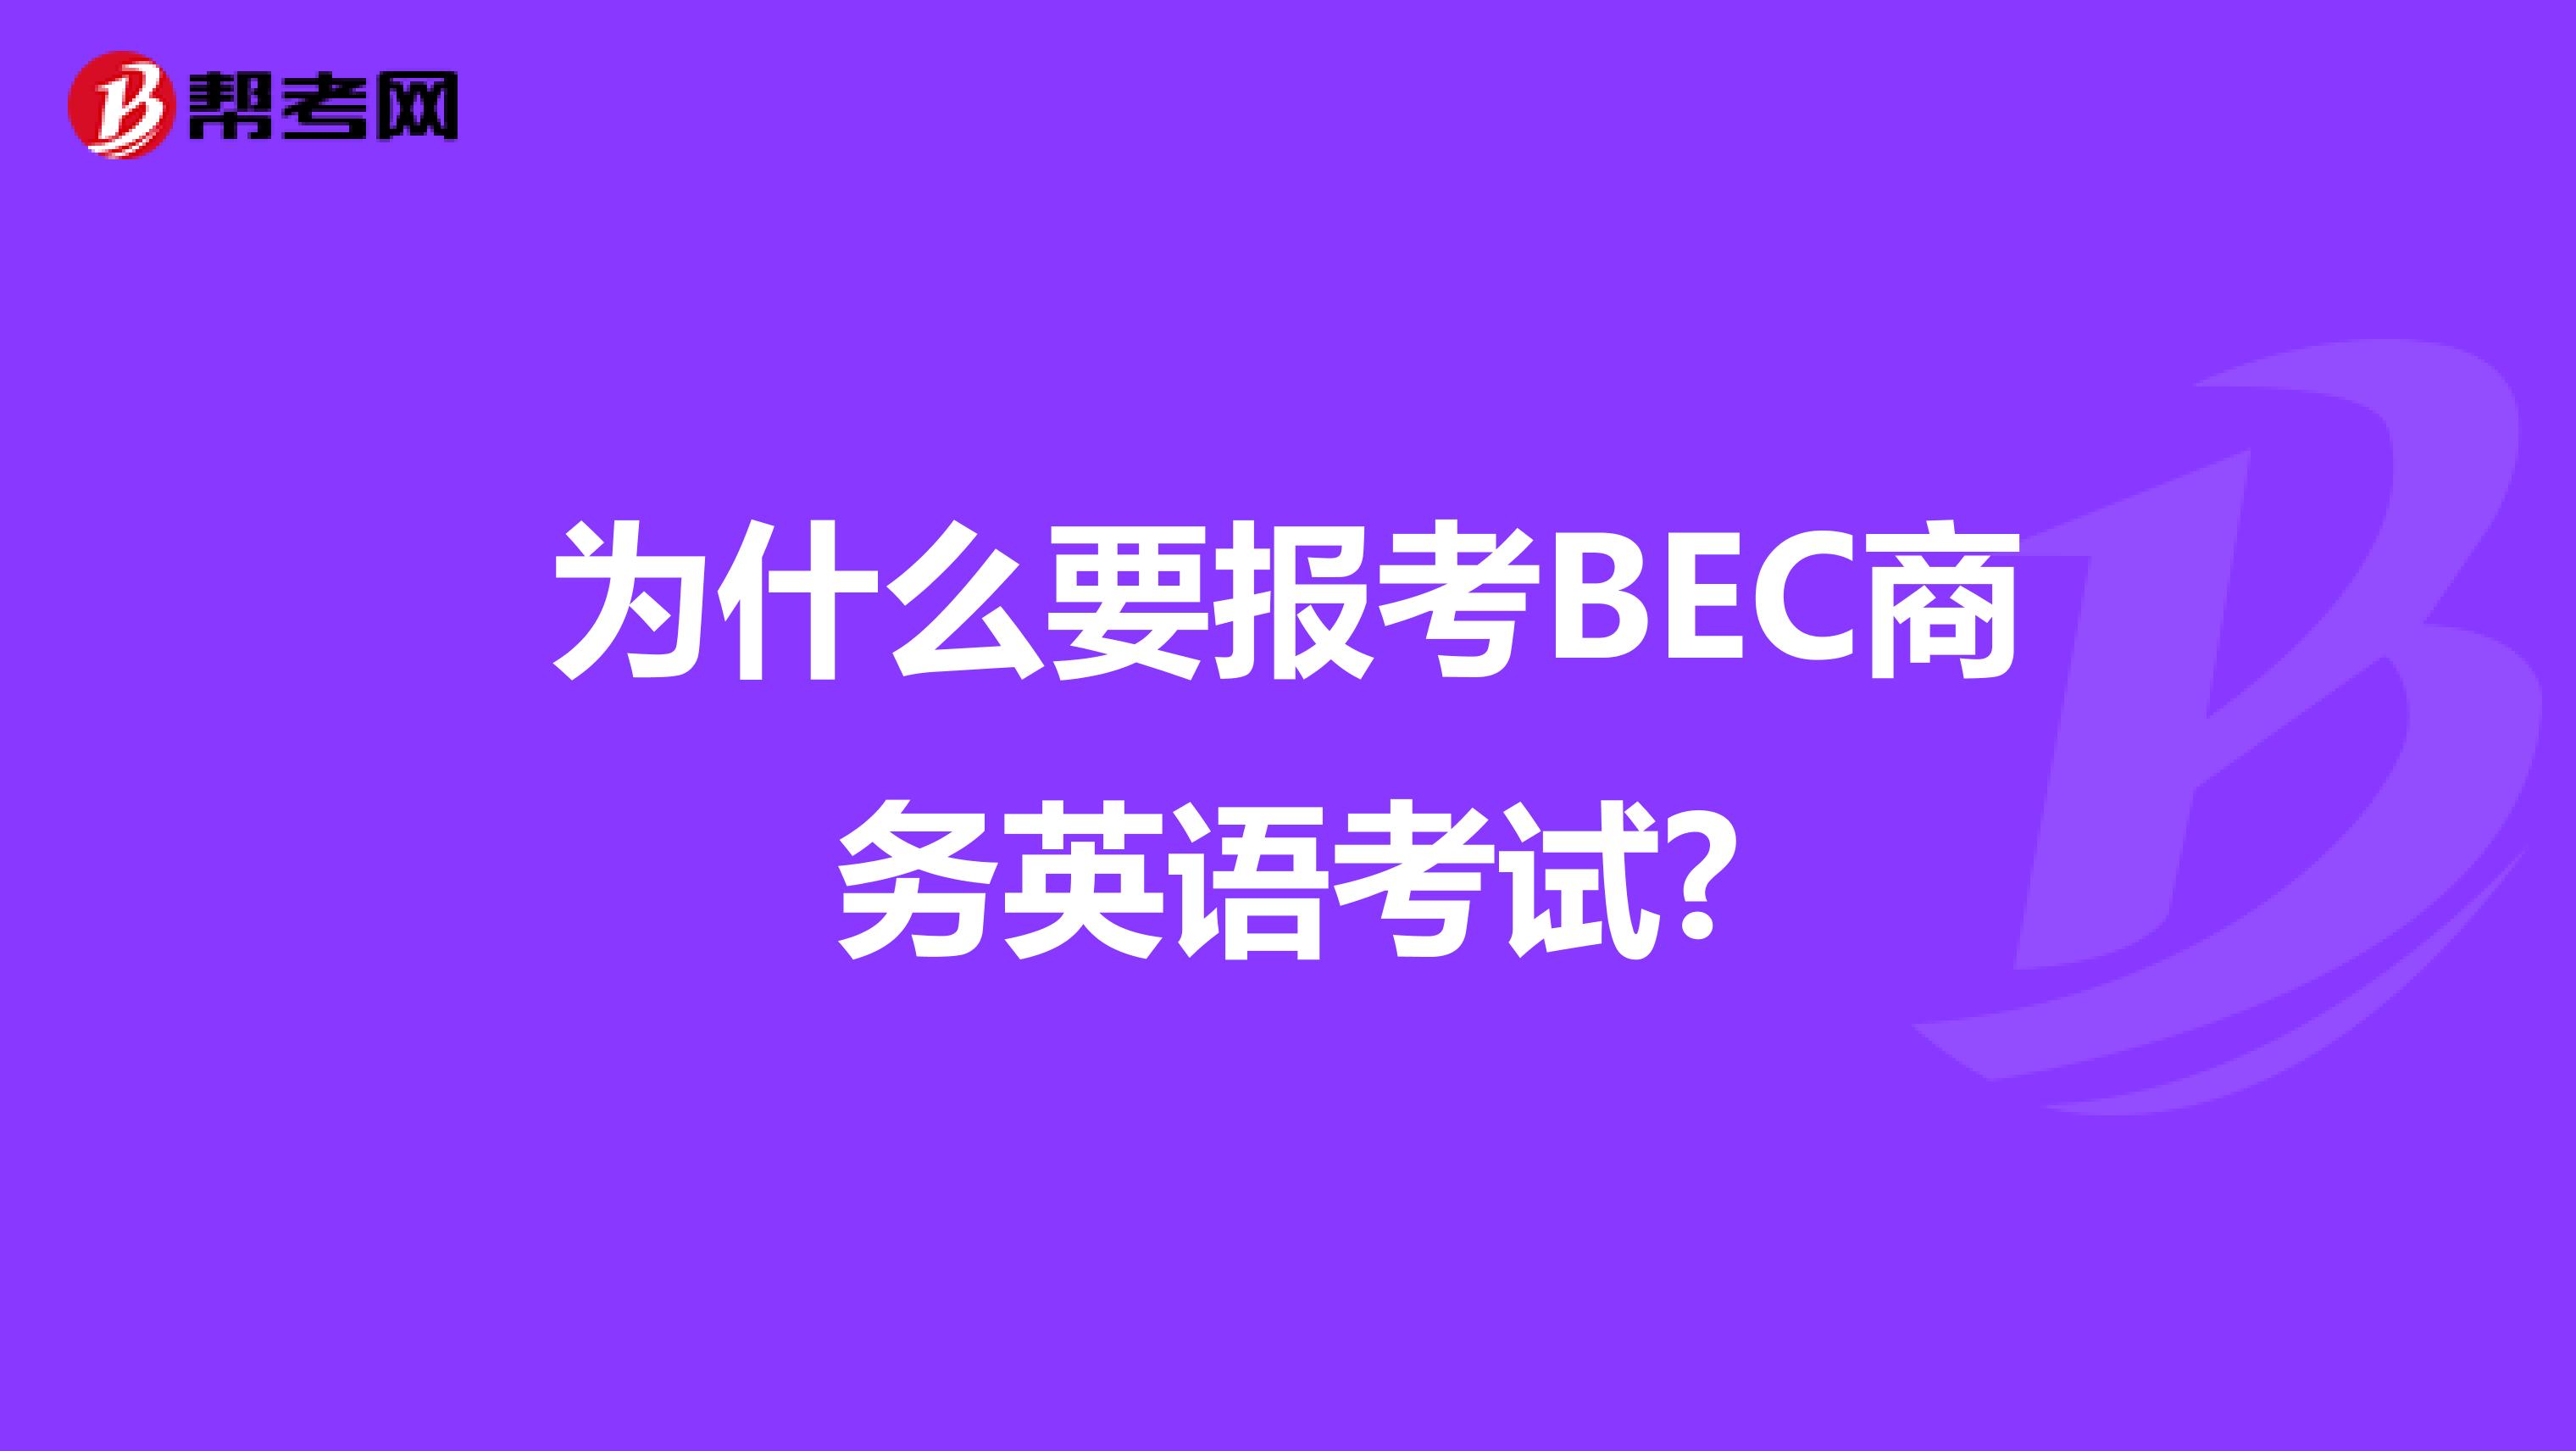 为什么要报考BEC商务英语考试?